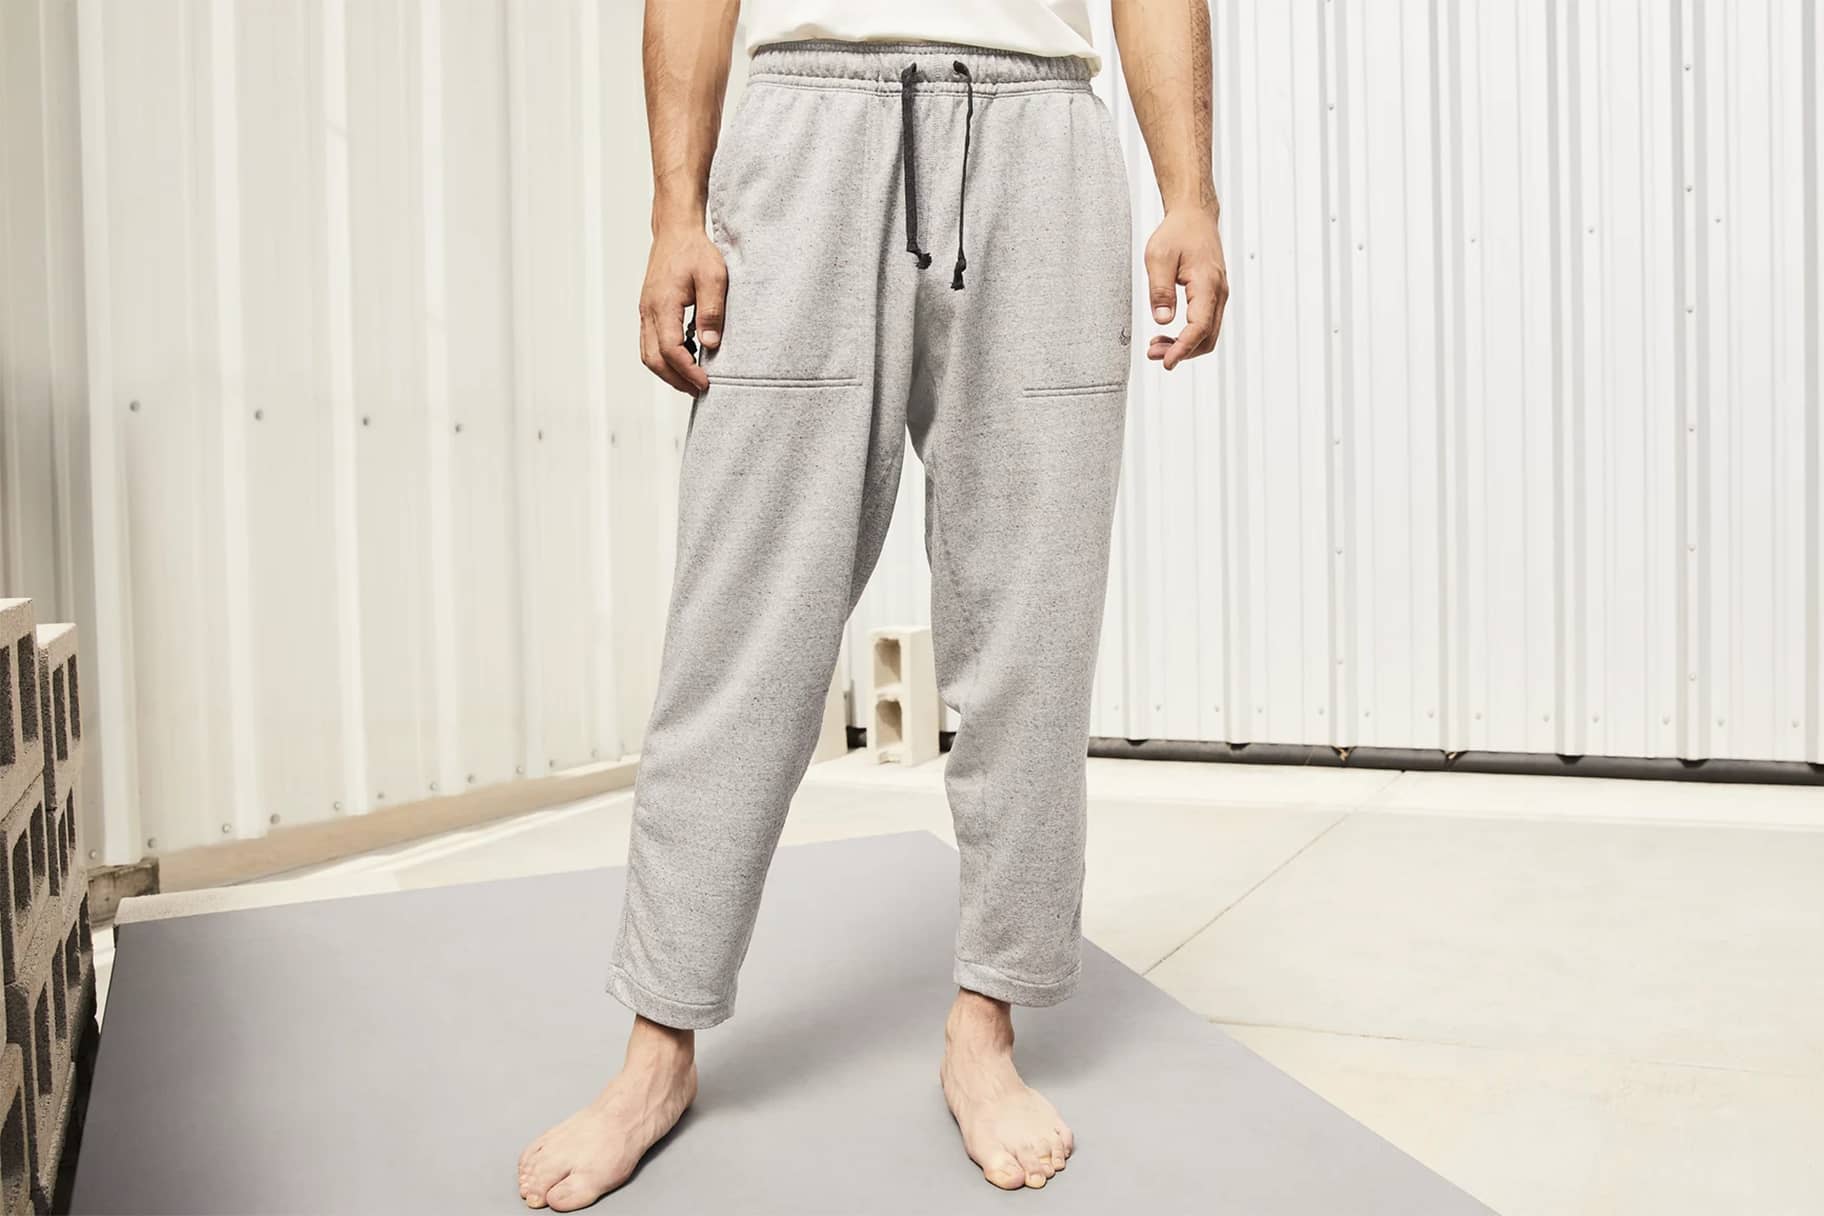 Cinq modèles de pantalon Nike pour homme suffisamment confortables pour dormir